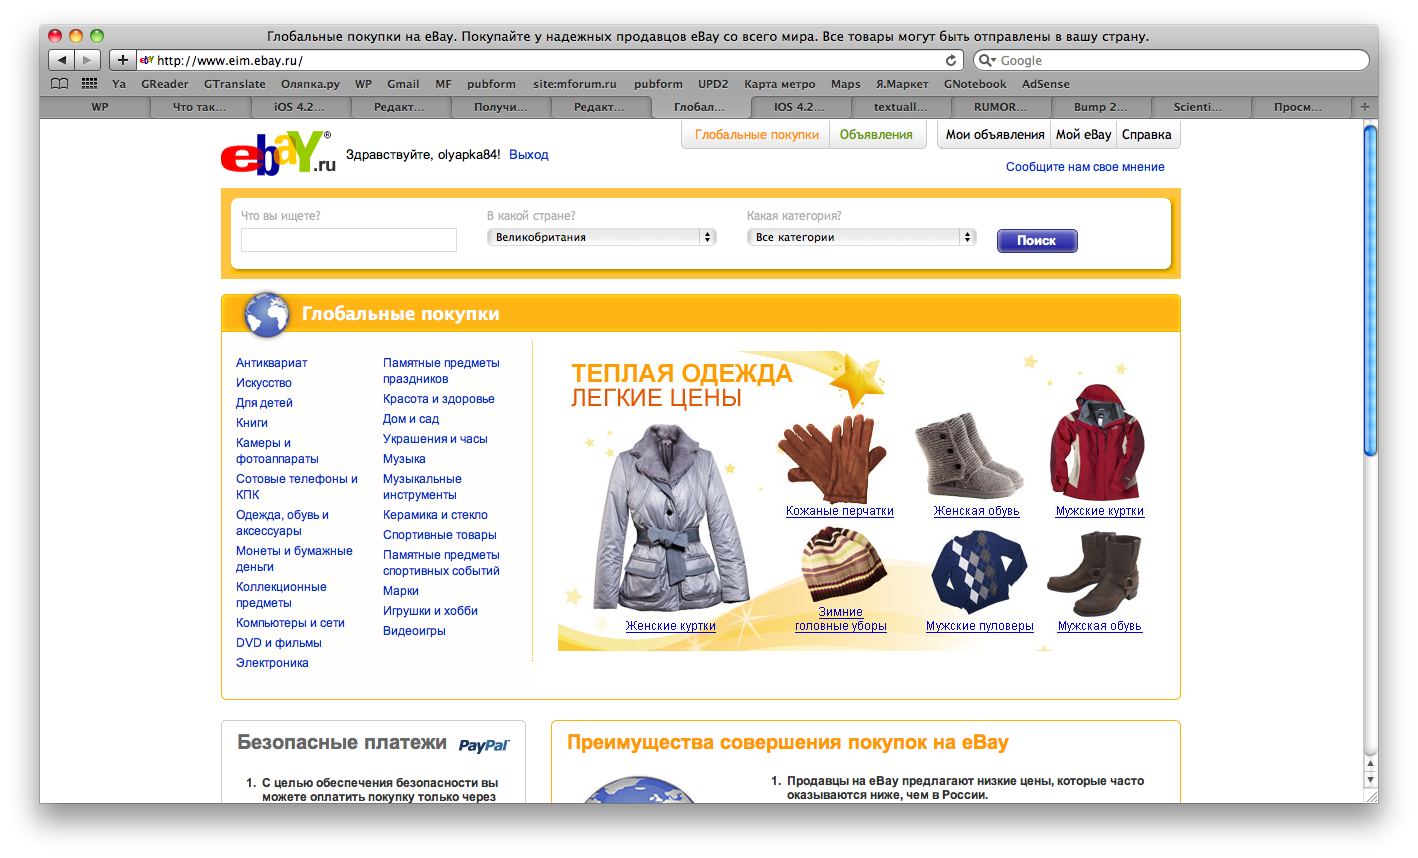 Сайт ebay com на русском. EBAY интернет магазин. ЕВАУ интернет магазин. EBAY интернет магазин на русском.